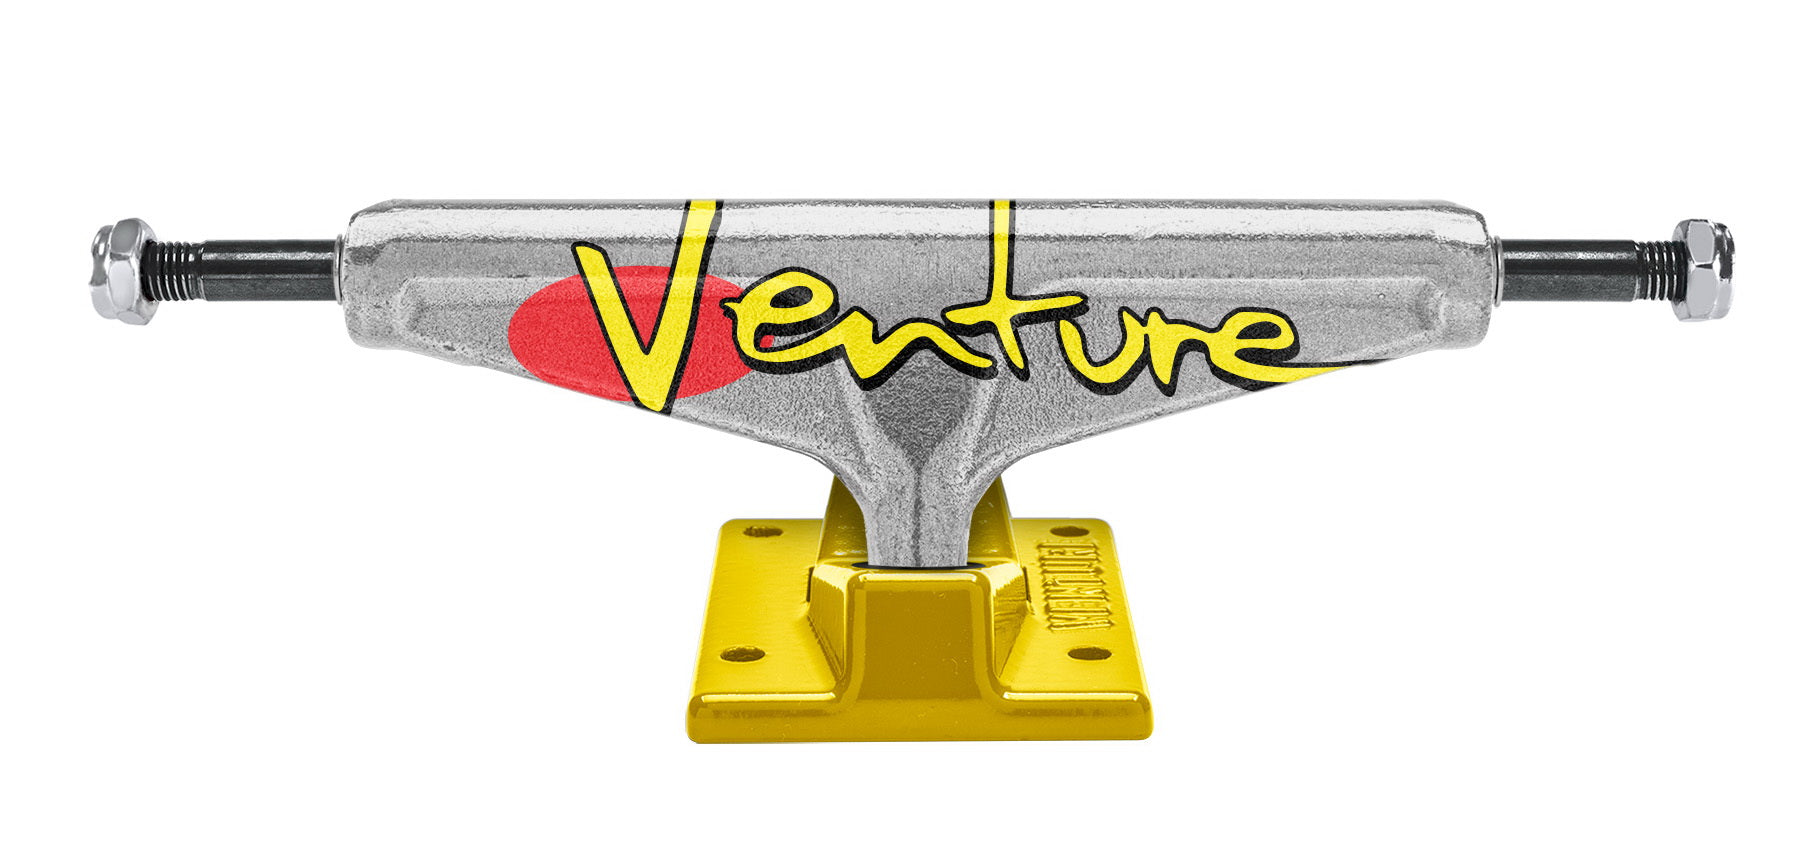 Venture - Skateboard - Trucks - '92 Fullbleed Pol/Yl 5.6 44717"  Trucks